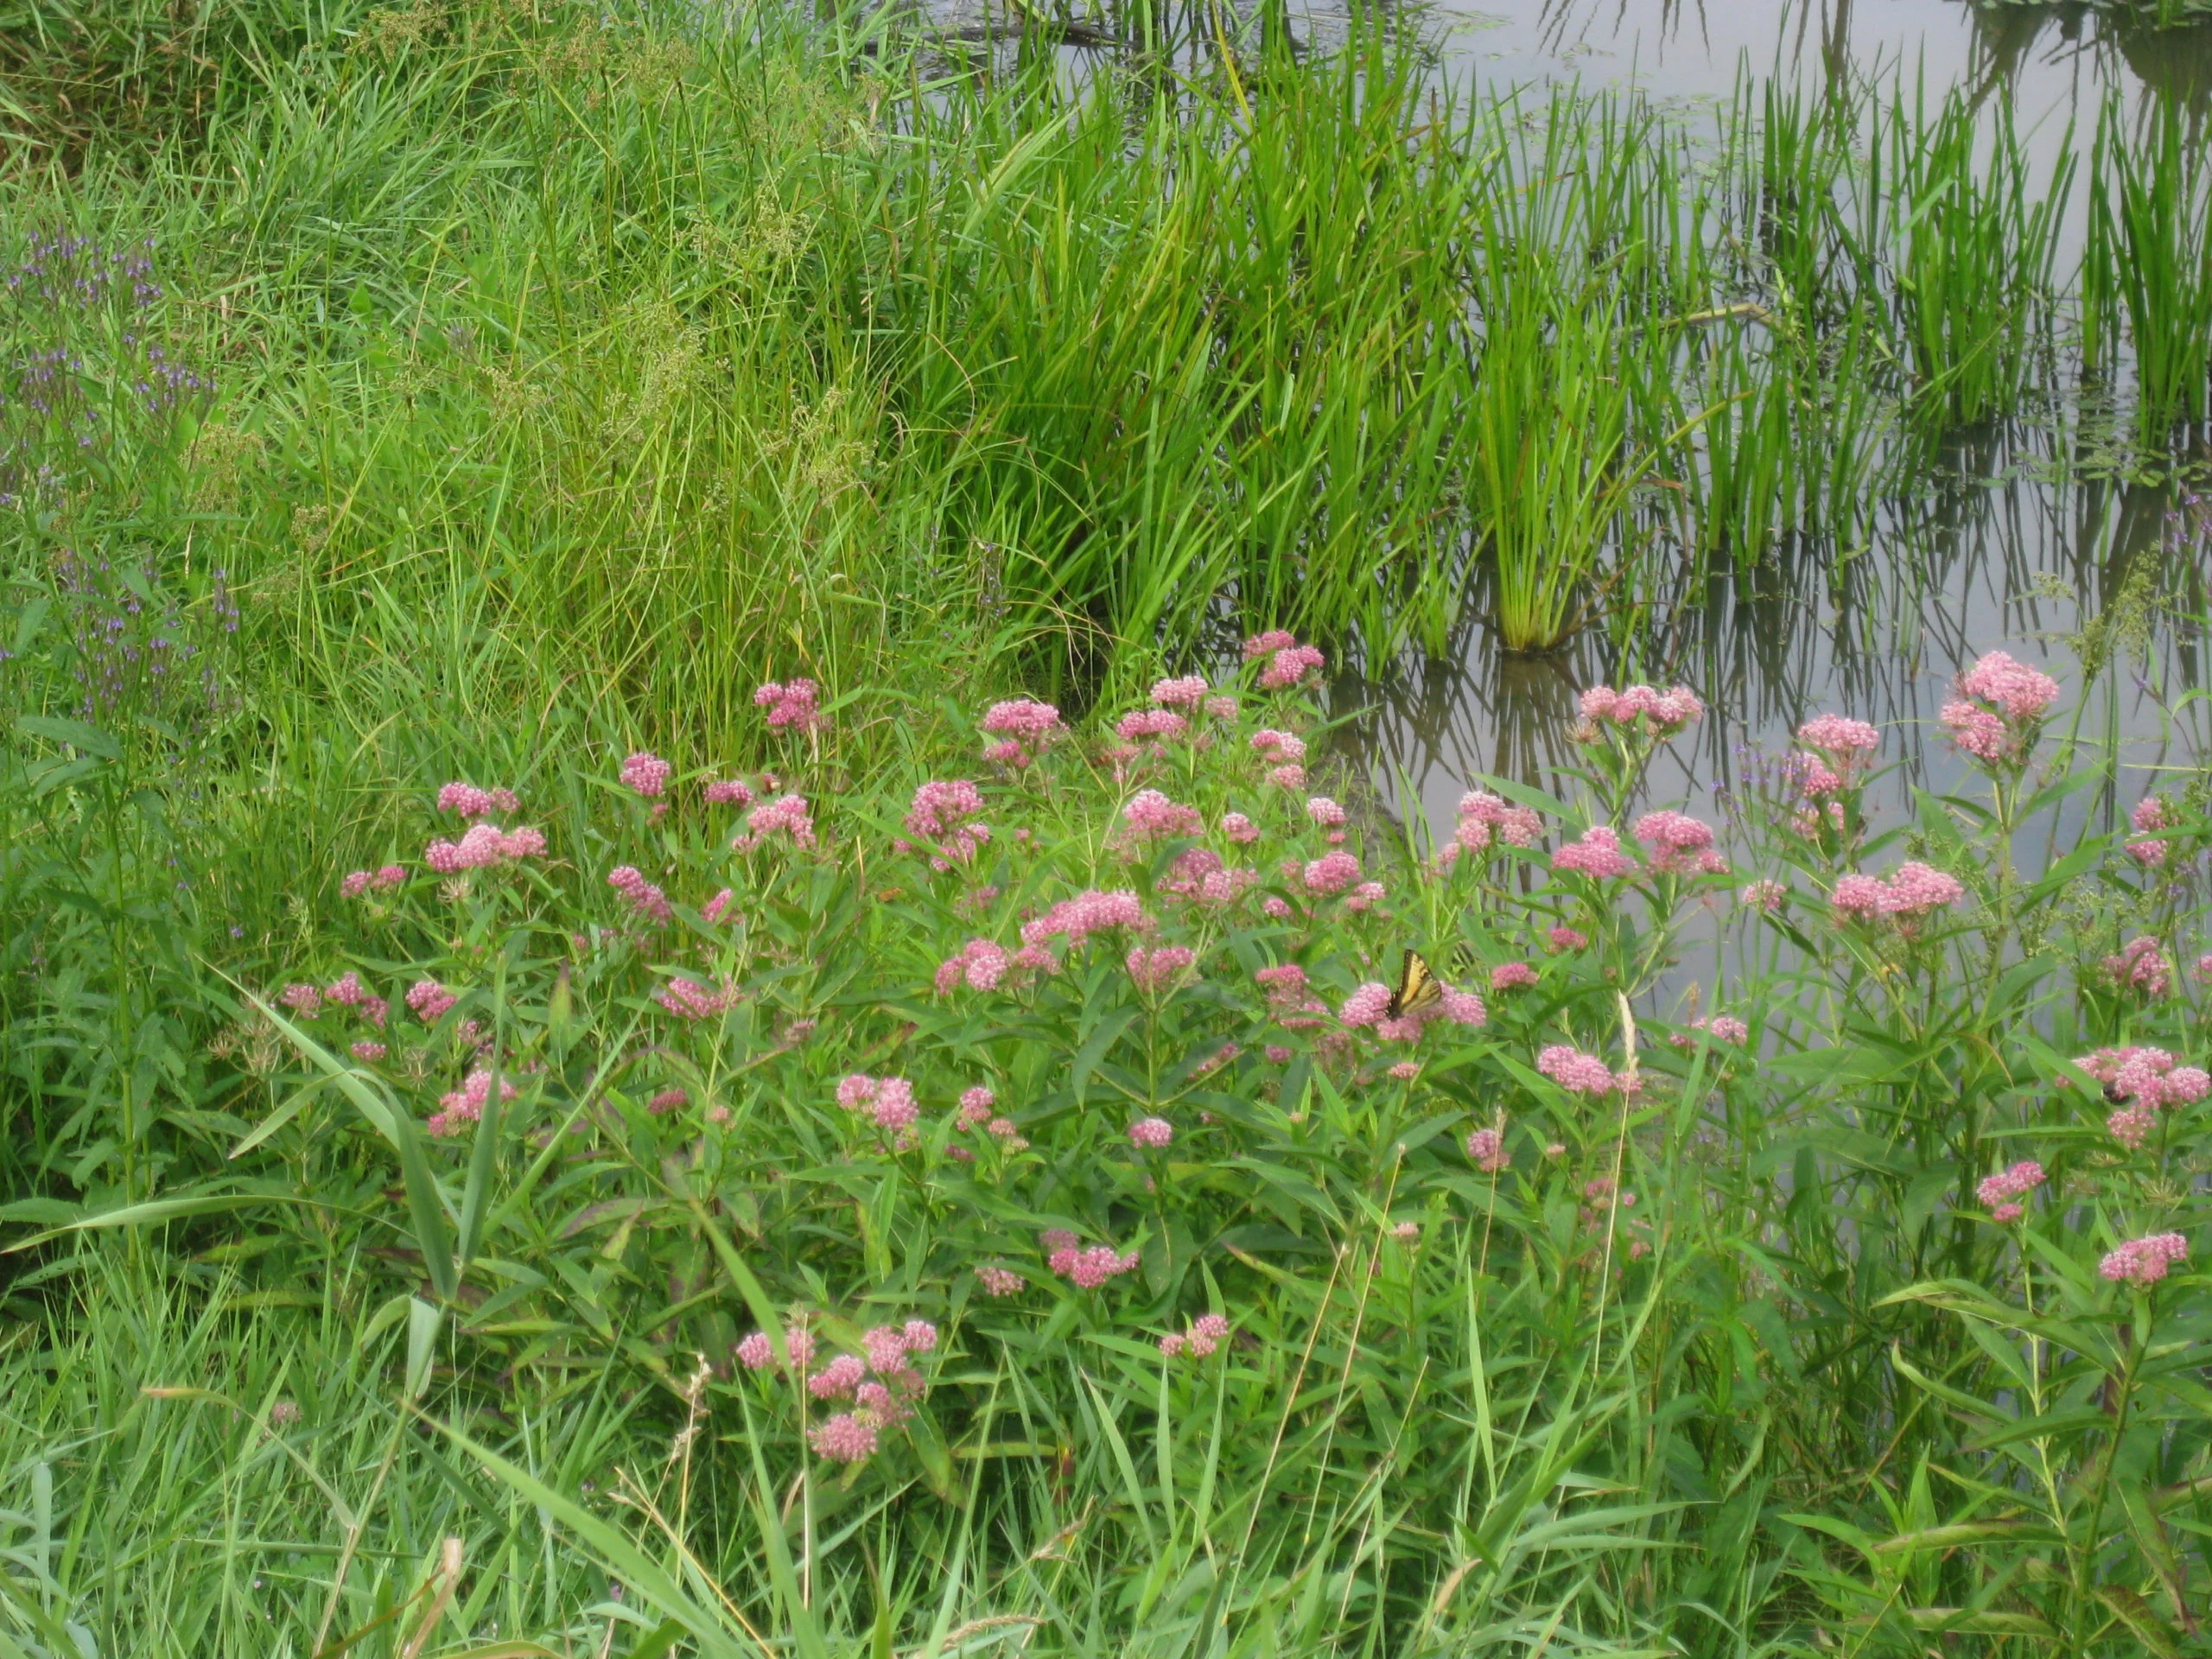 Pink flowers near water